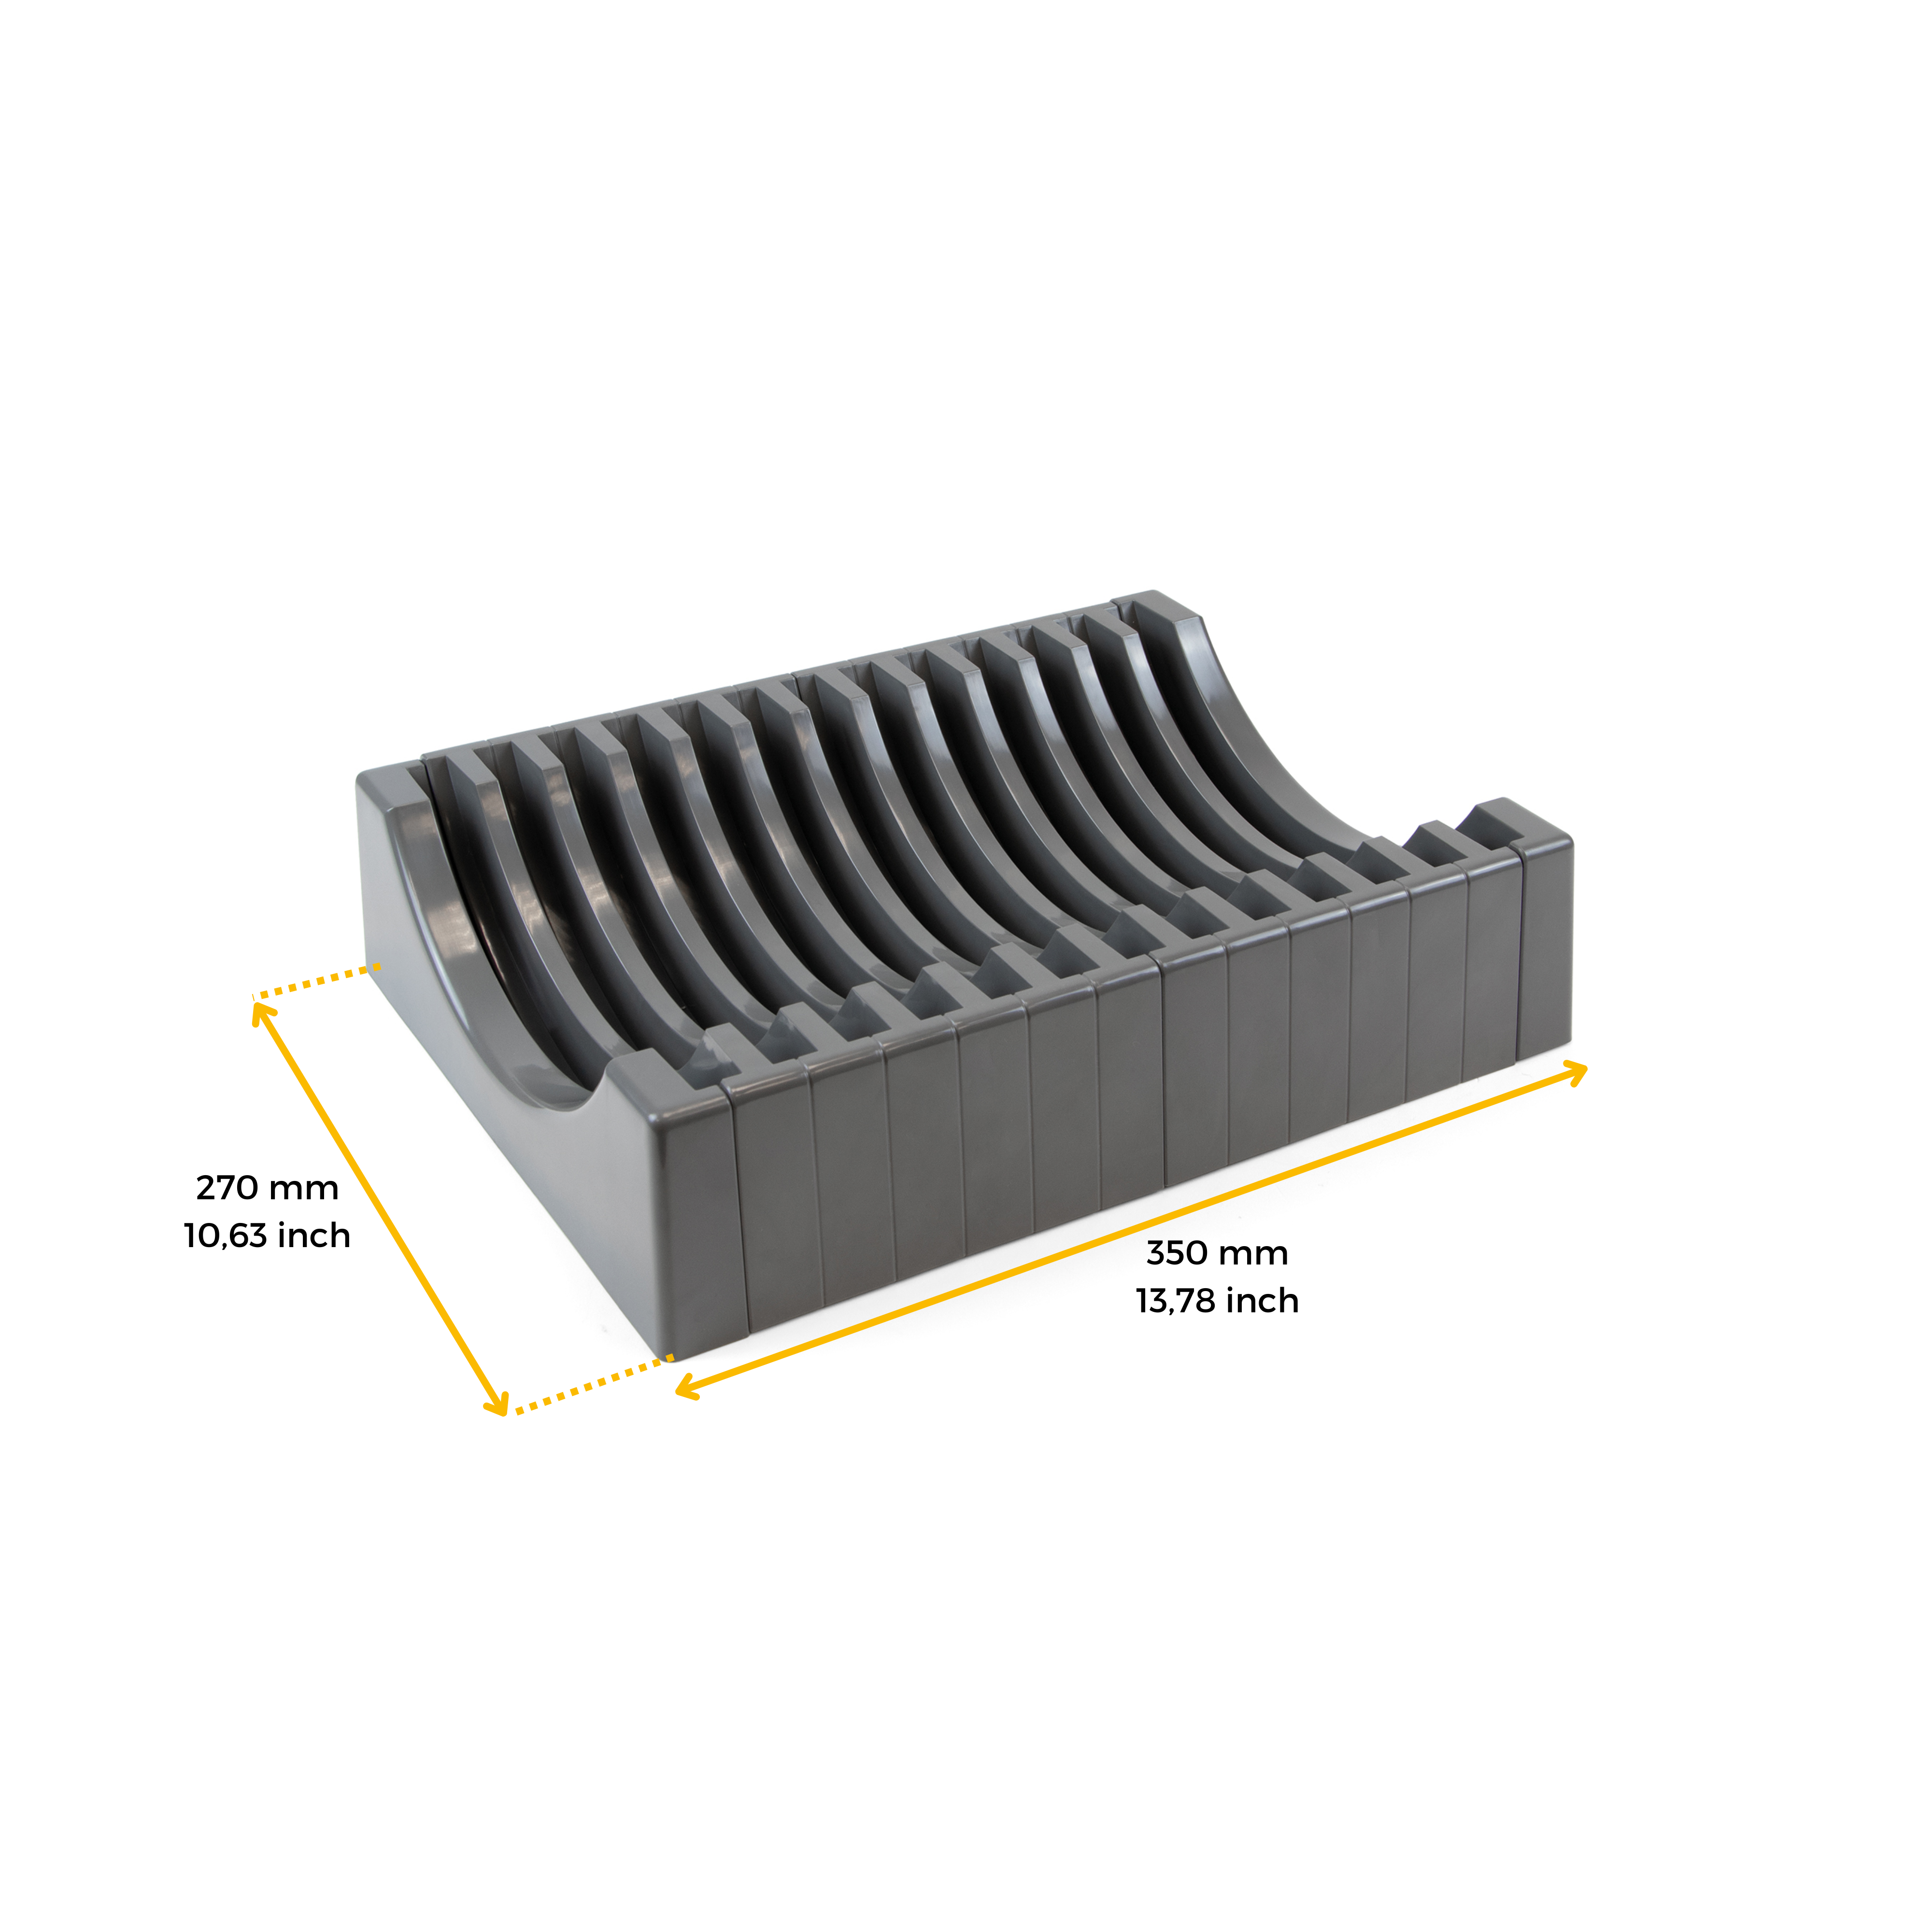 Porte-assiette vertical Orderbox pour tiroir - 159x468mm - Gris - Alu et  plastique EMUCA